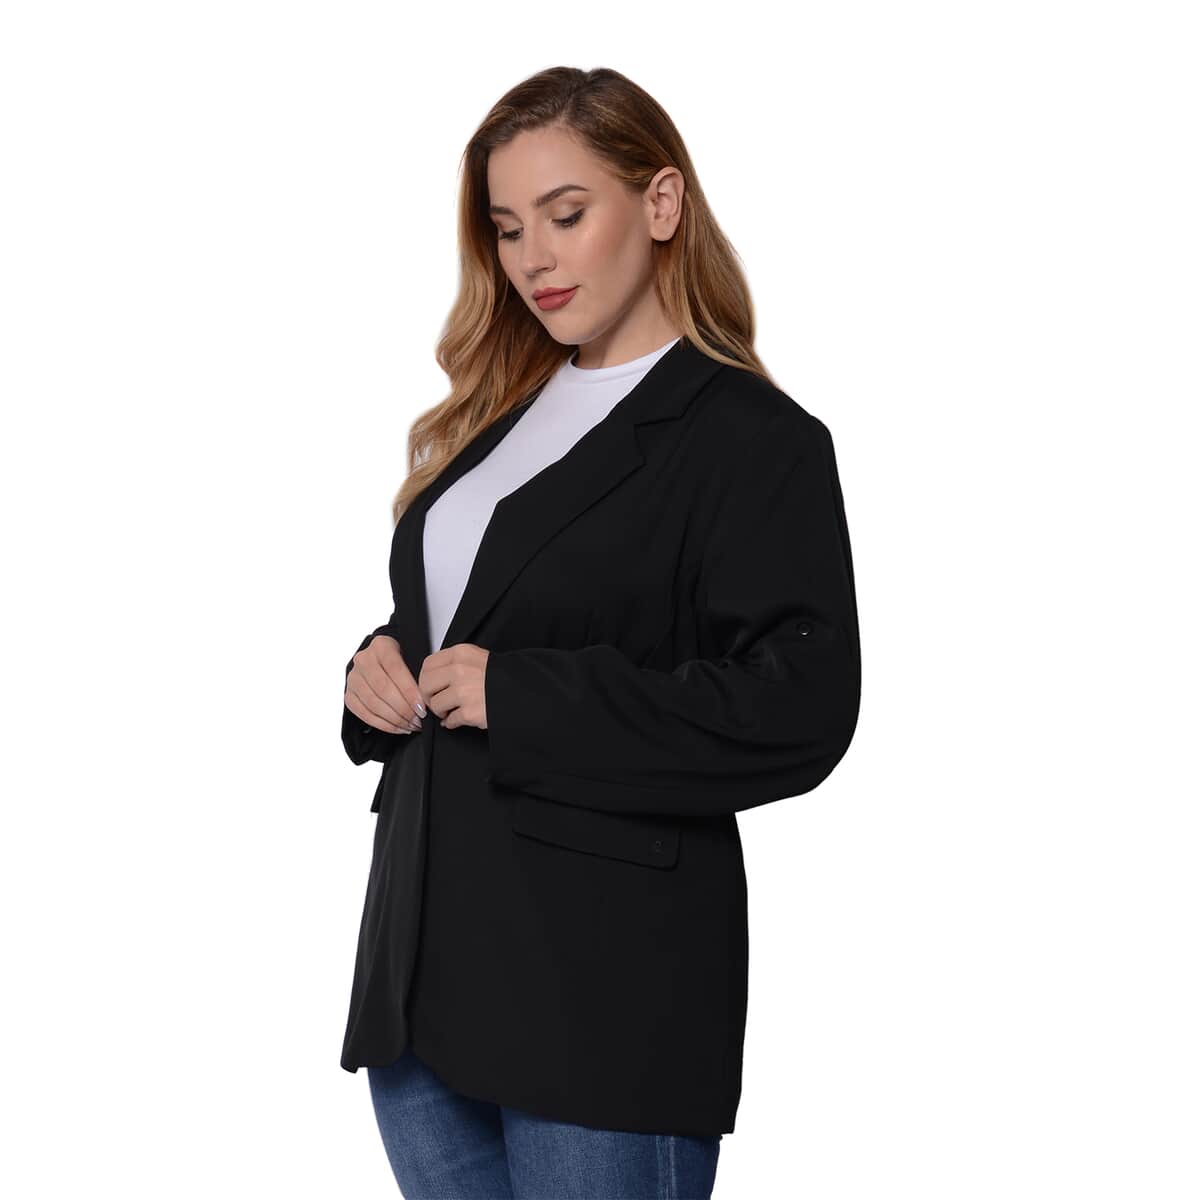 Black Women's Suit Jacket - X image number 2